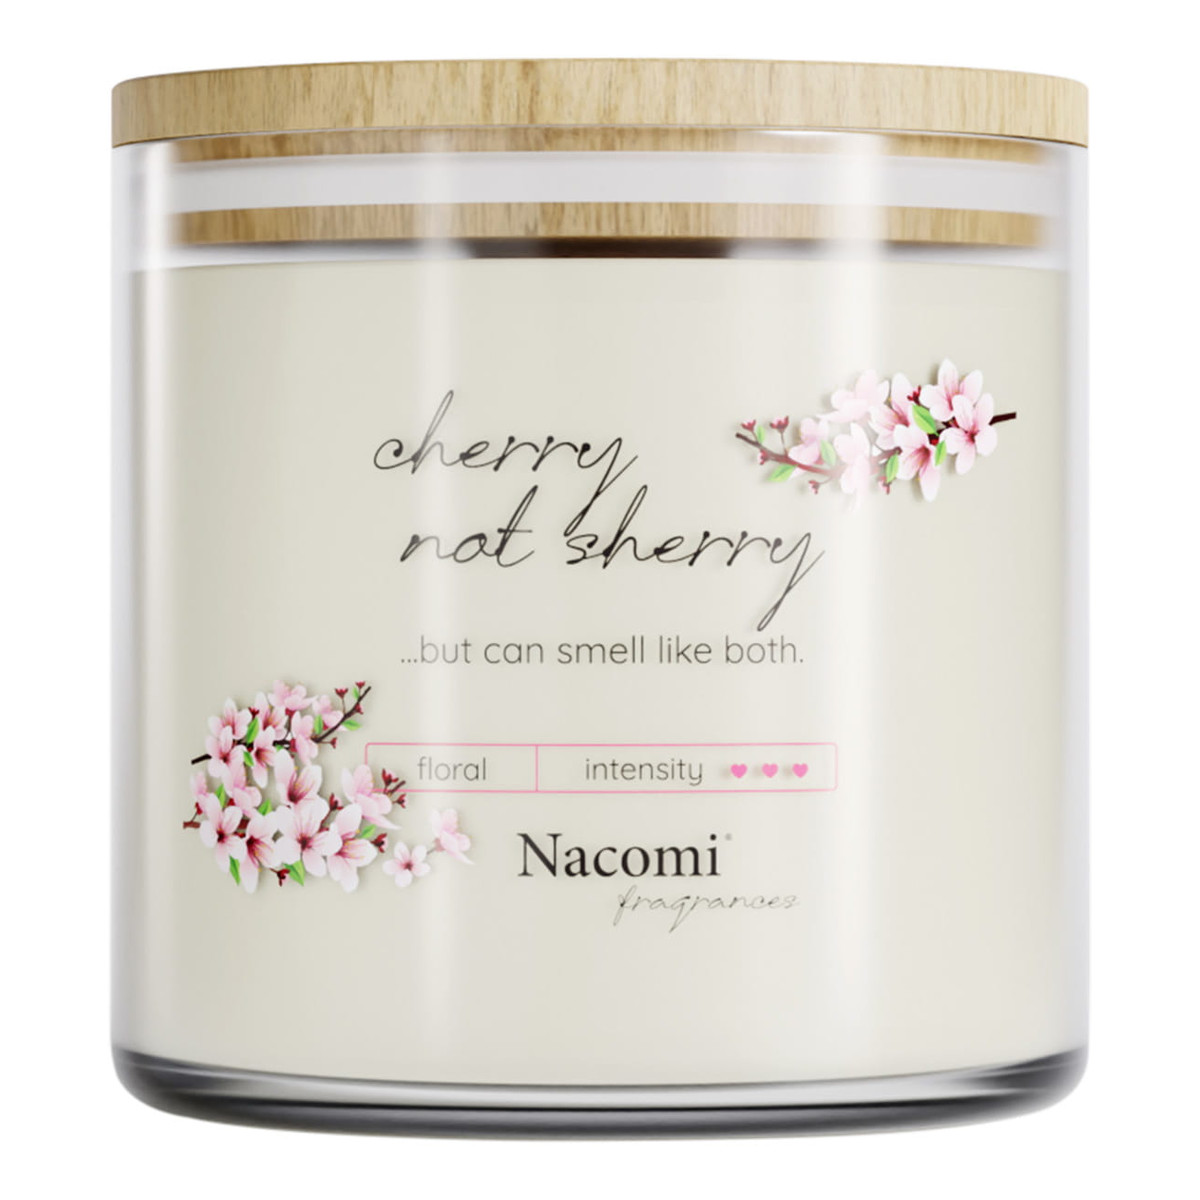 Nacomi Fragrances Świeca zapachowa sojowa - Cherry not sherry 450g